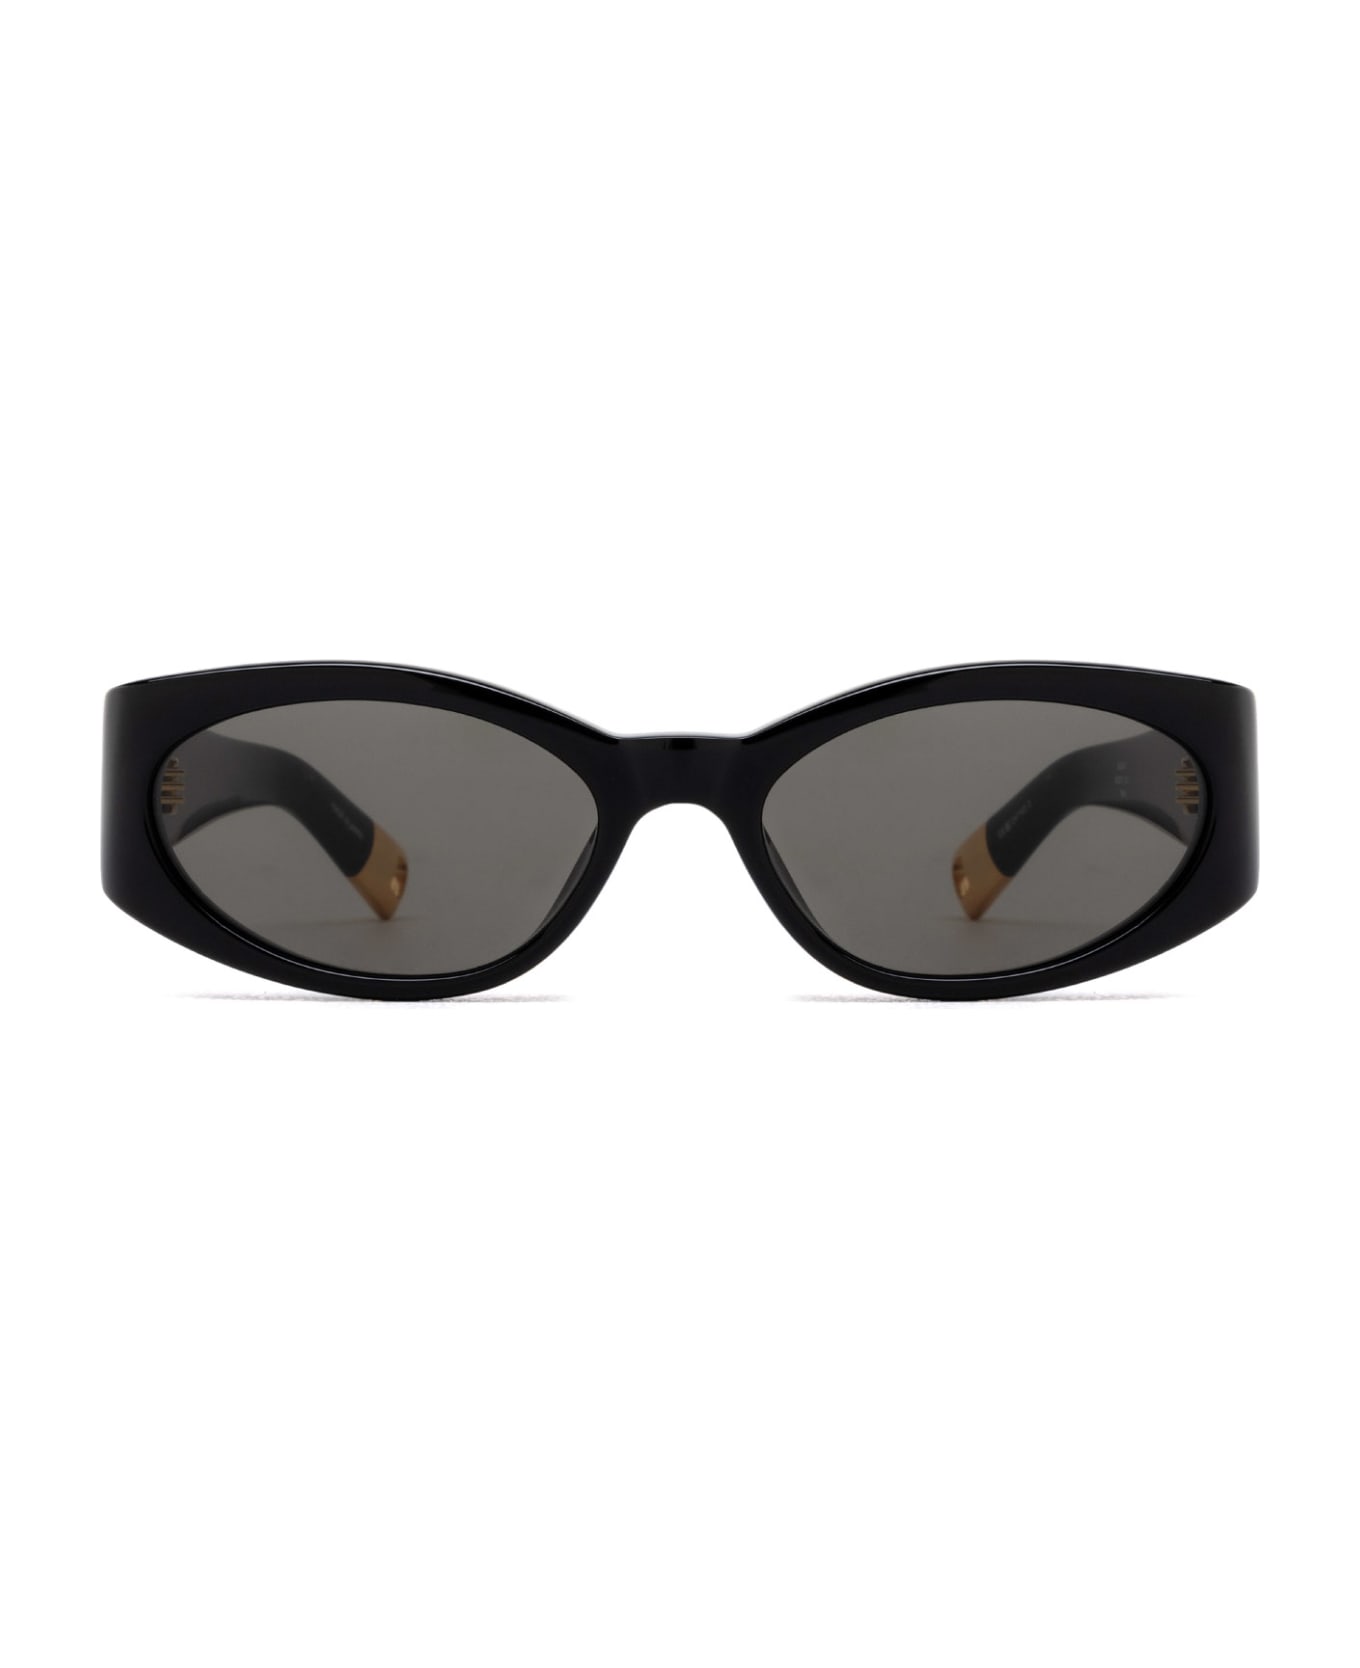 Jacquemus Jac4 Black Glasses - Black